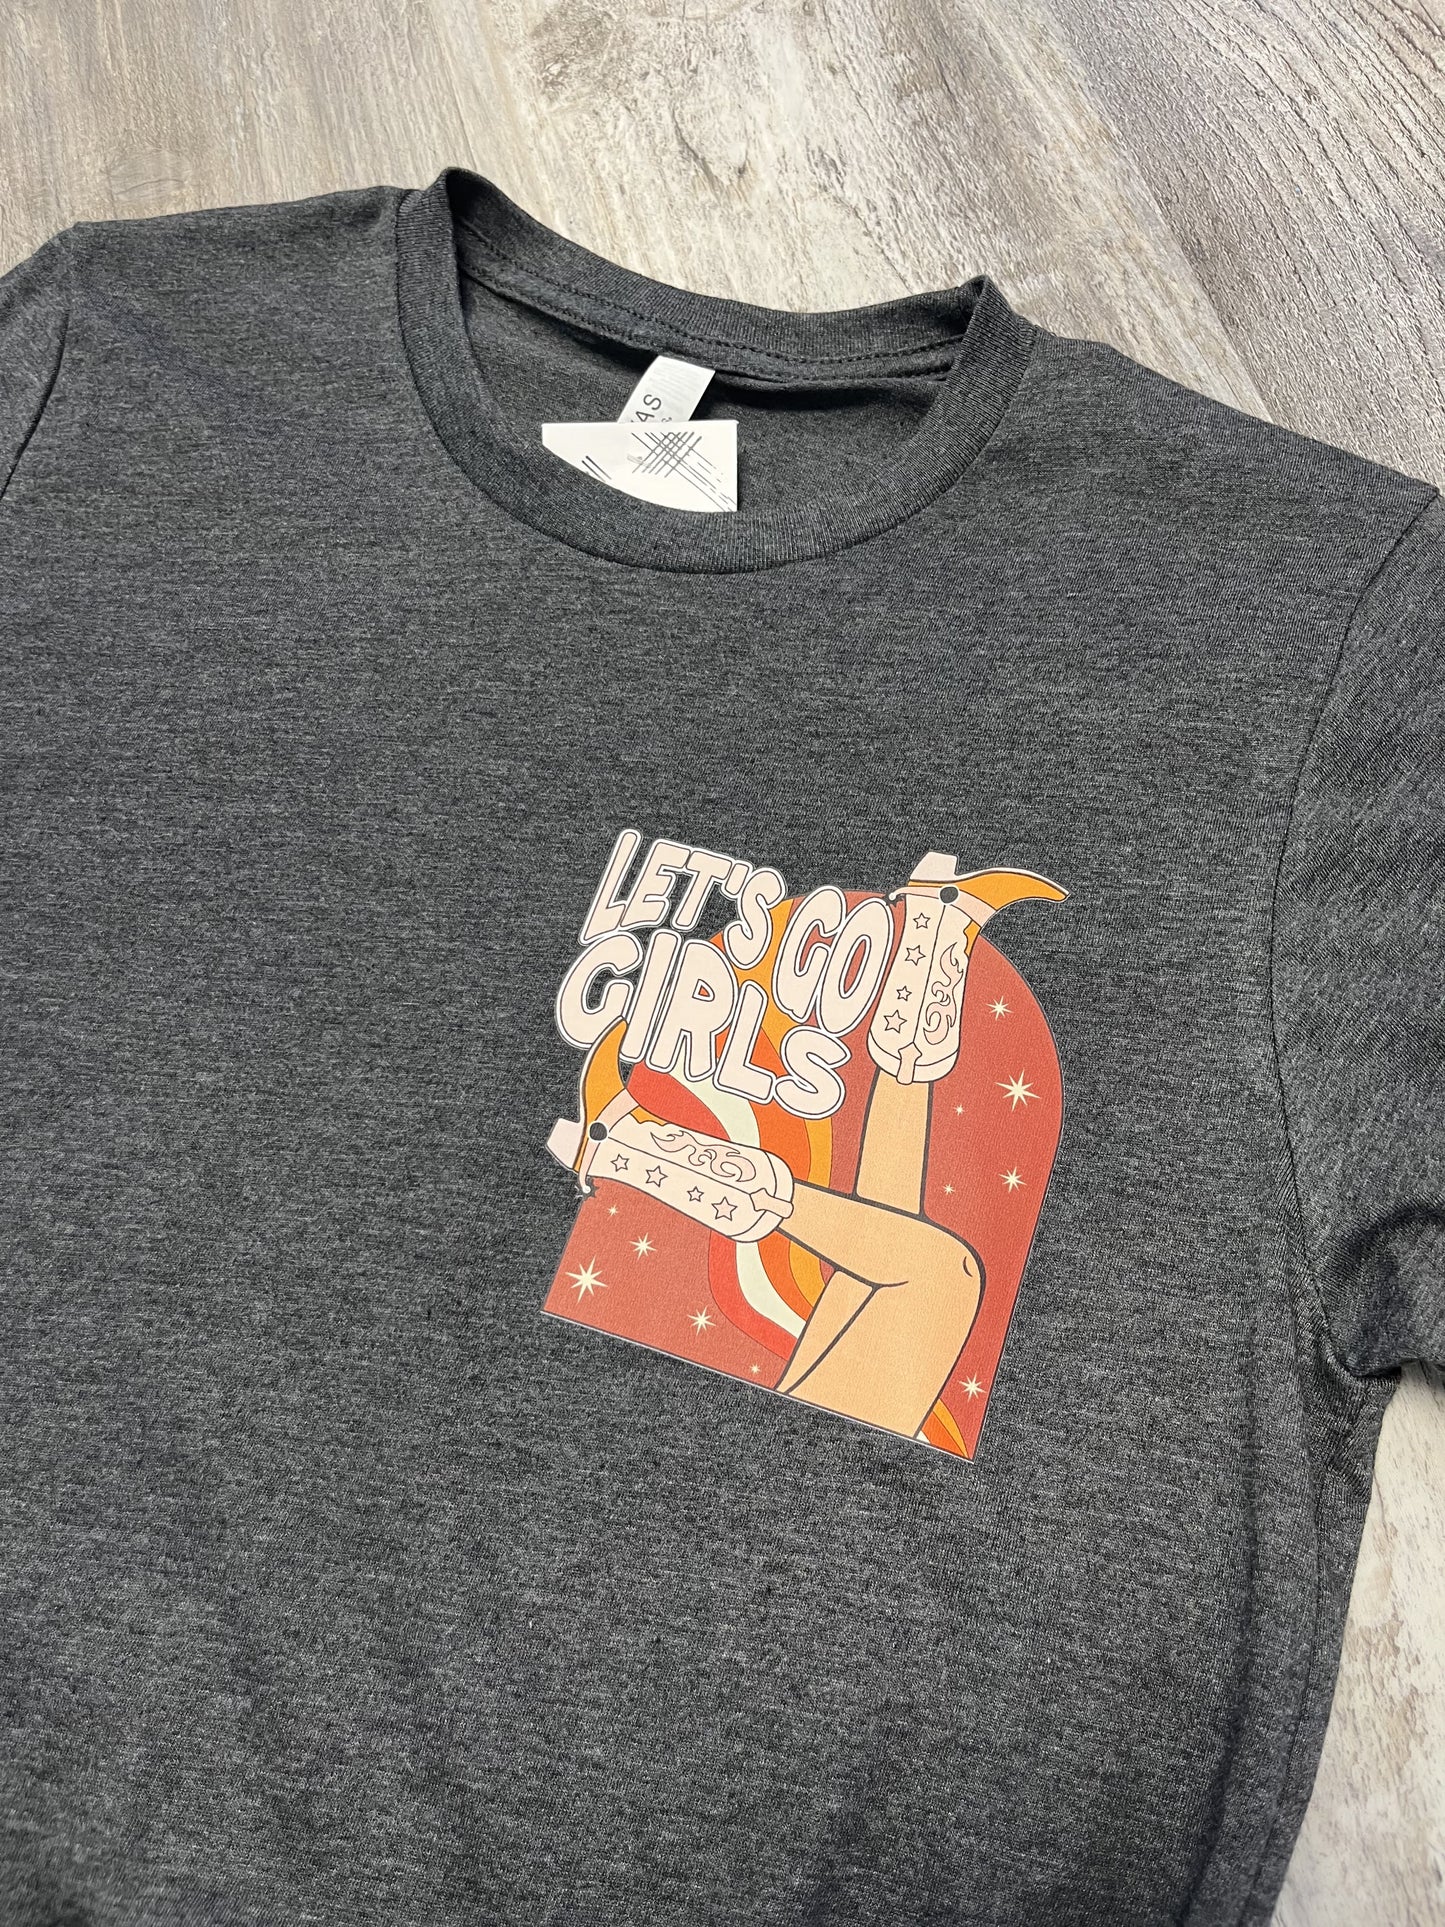 "Let's Go Girls" T-Shirt